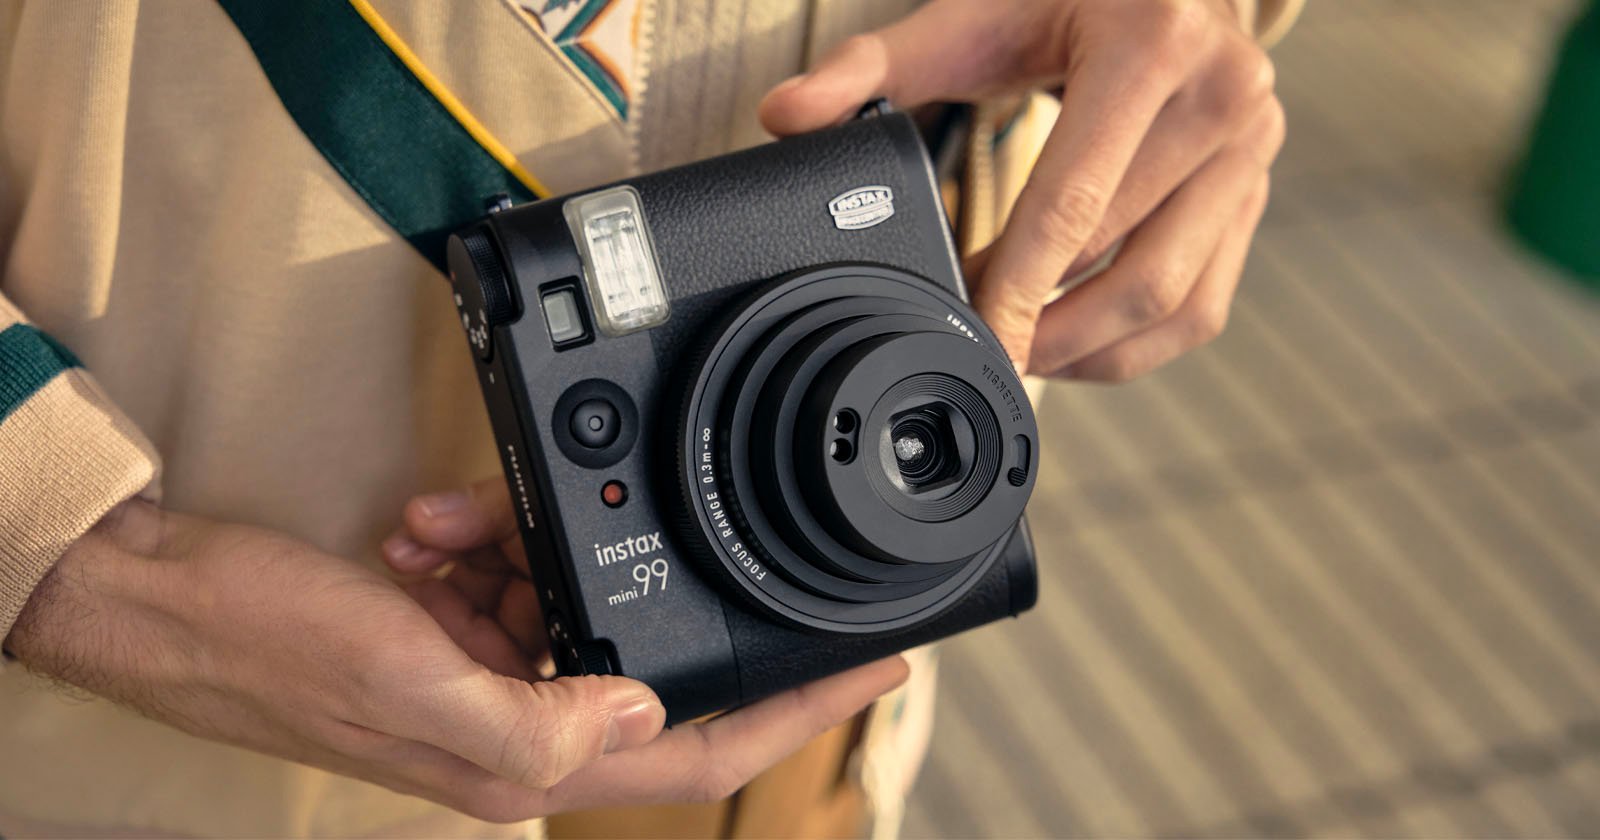 The Fujifilm Instax Mini 99 is a More 'Advanced' Instant Camera